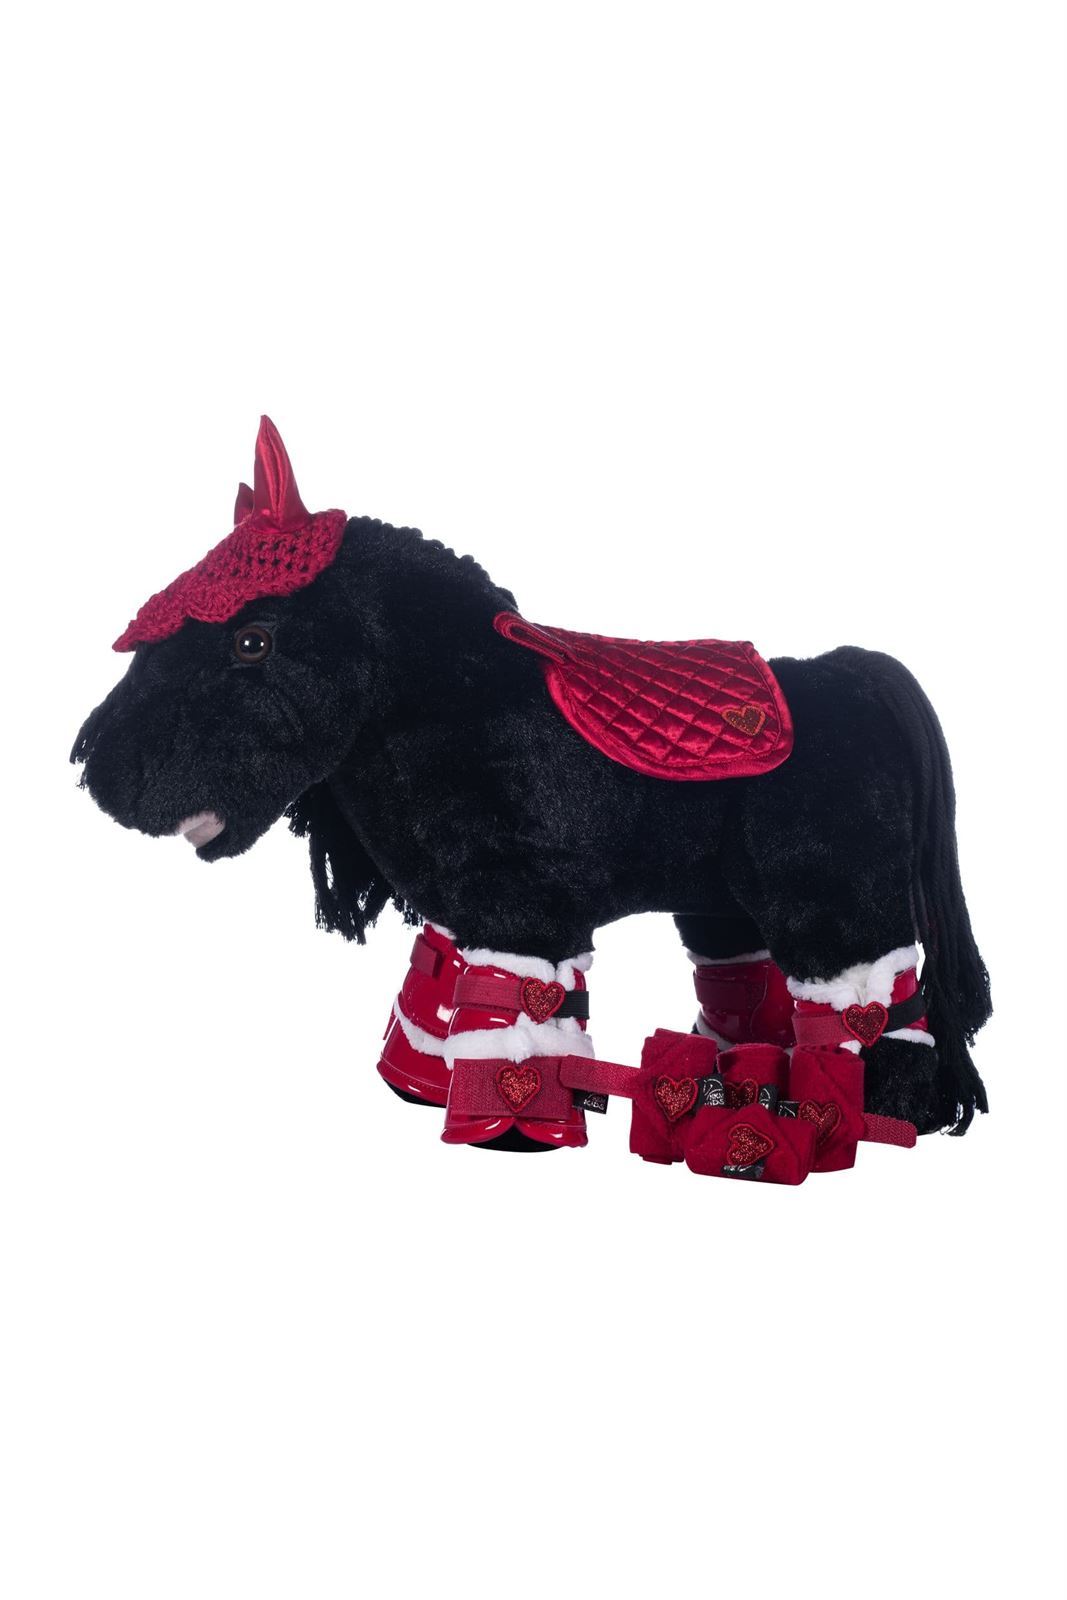 Set accesorios Cuddle pony HKM Sports Equipment Mantilla, orejeras, vendas, protectores y campanas color rosa - Imagen 2